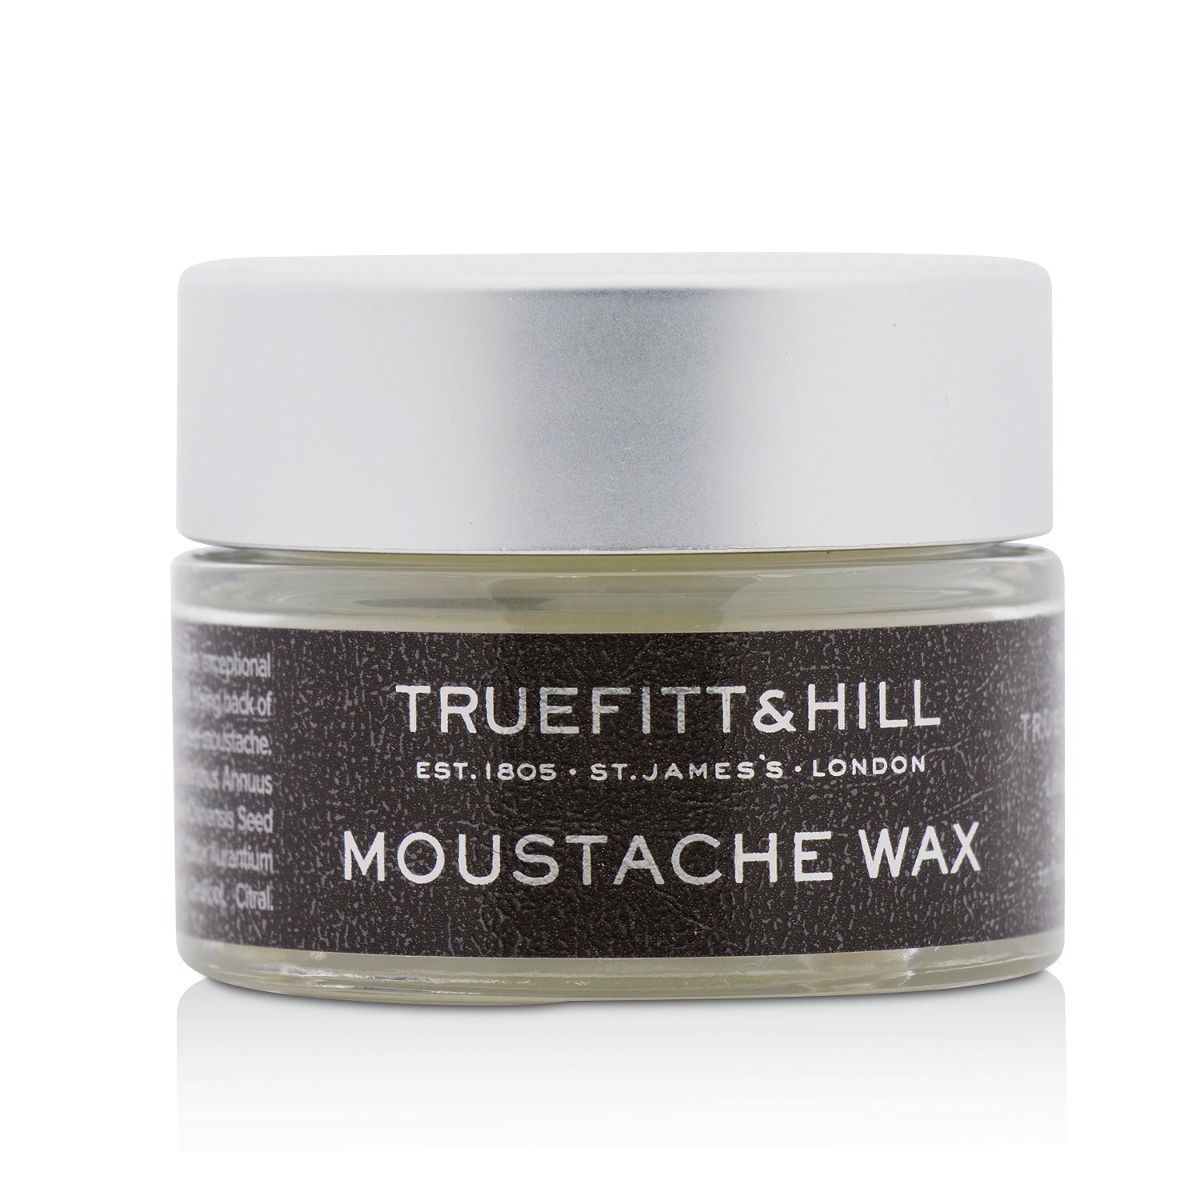 Moustache Wax Truefitt & Hill Image